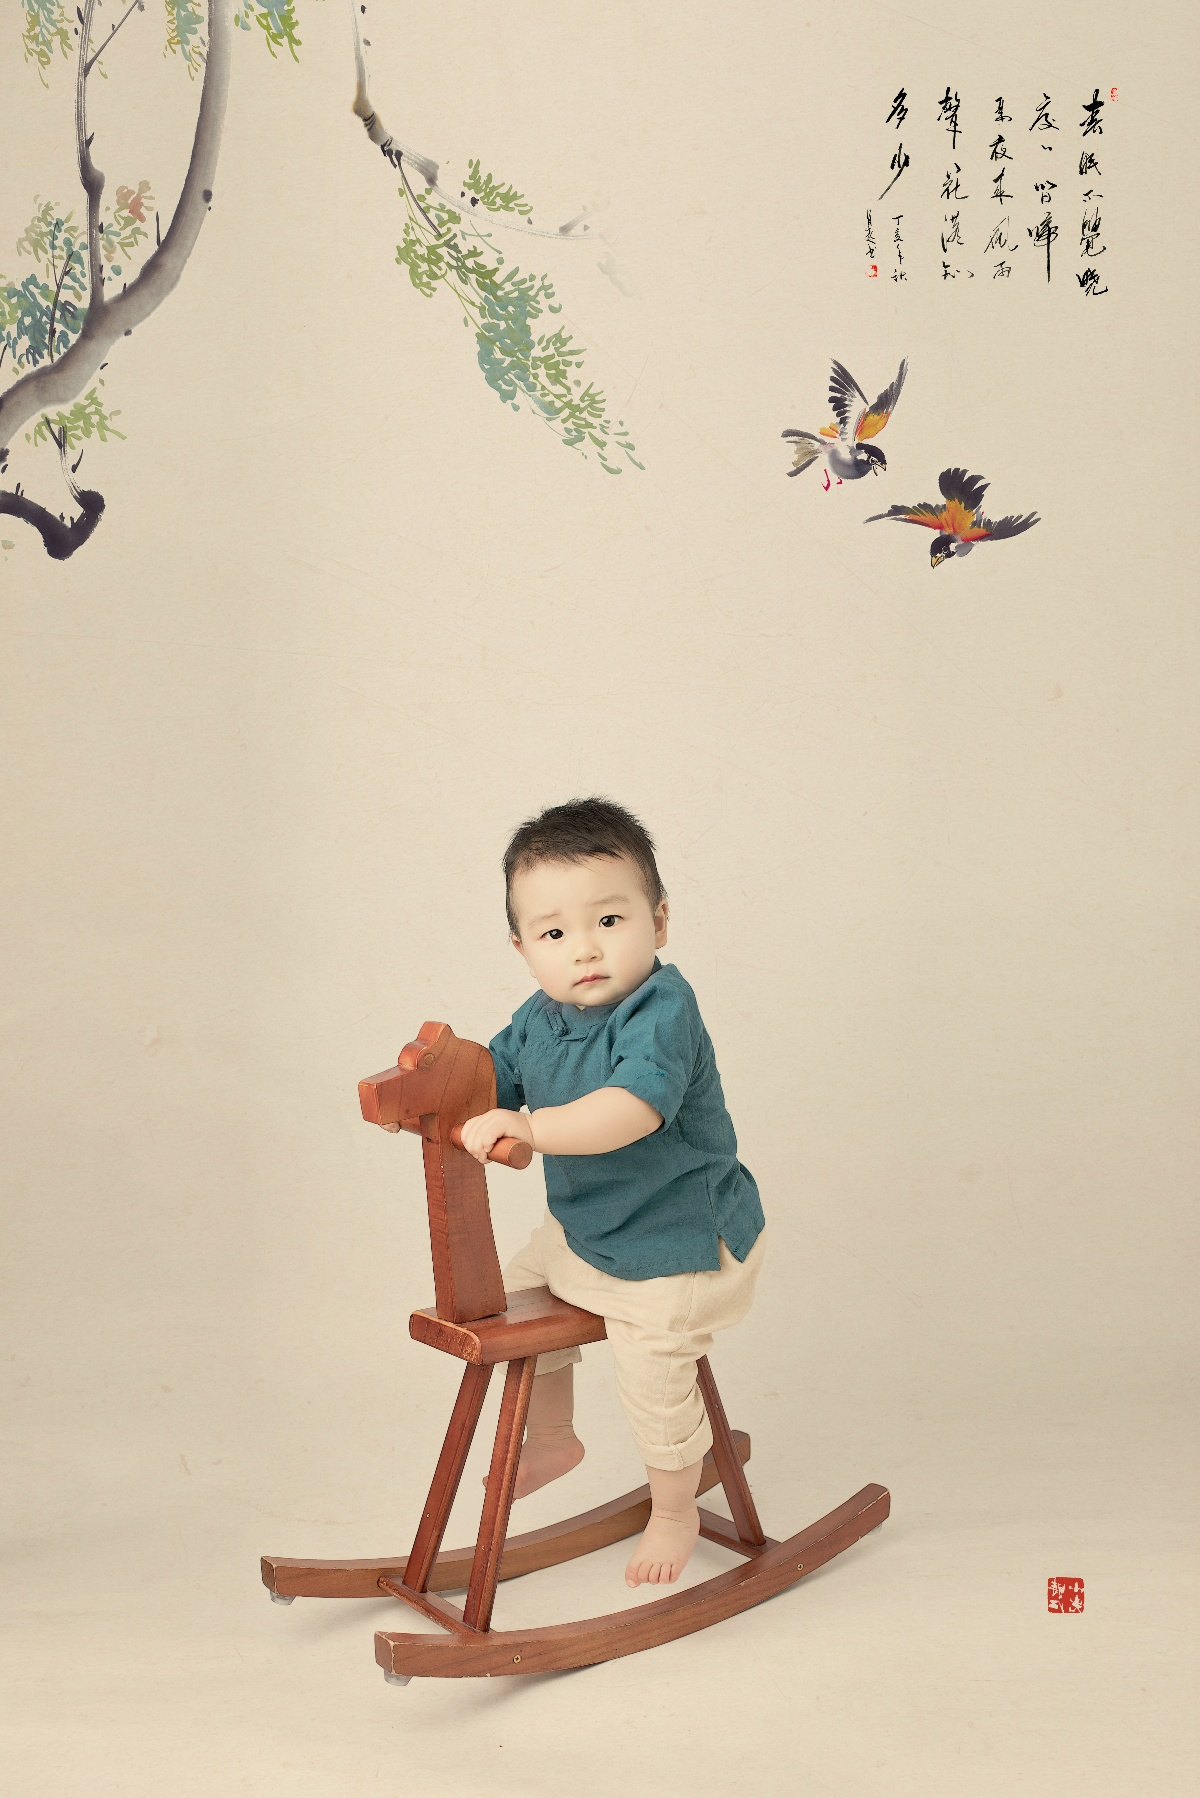 壁纸1440×900黑白婴儿摄影 古典小宝宝图片壁纸壁纸,爱与纯真-可爱婴儿儿童摄影壁纸壁纸图片-摄影壁纸-摄影图片素材-桌面壁纸